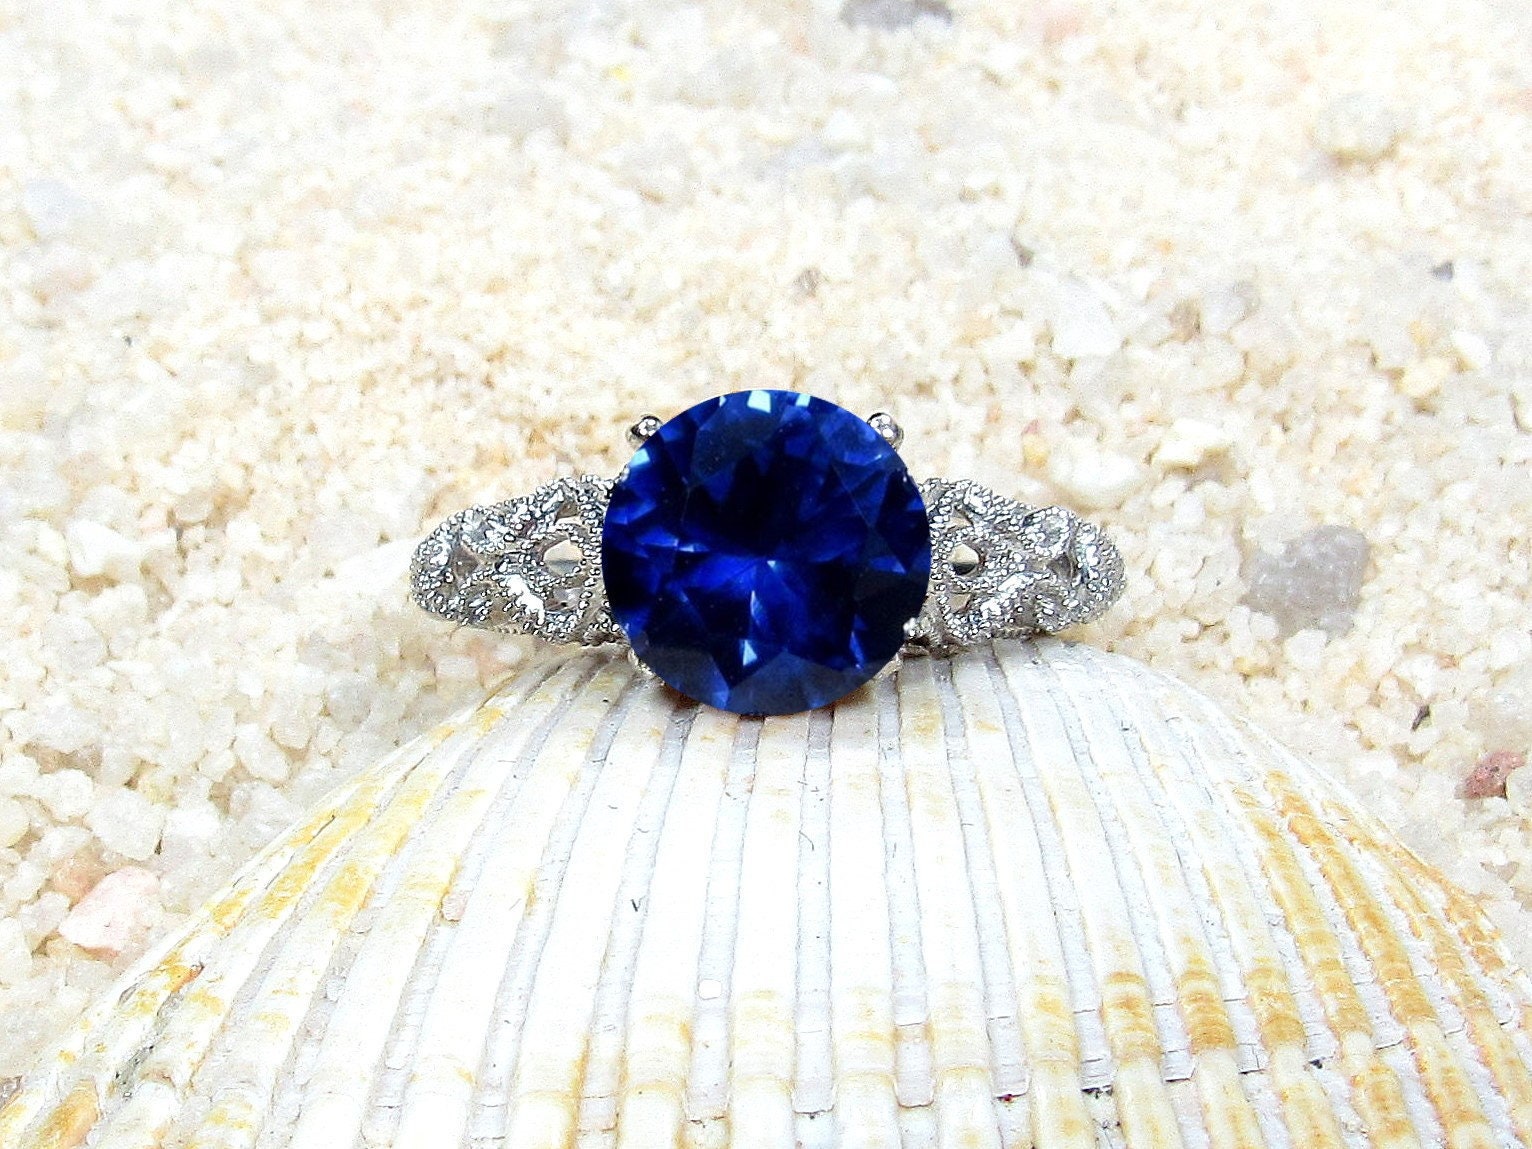 2ct Andromeda 8mm Blue Sapphire Engagement Ring, Antique, Vintage, Filigree BellaMoreDesign.com